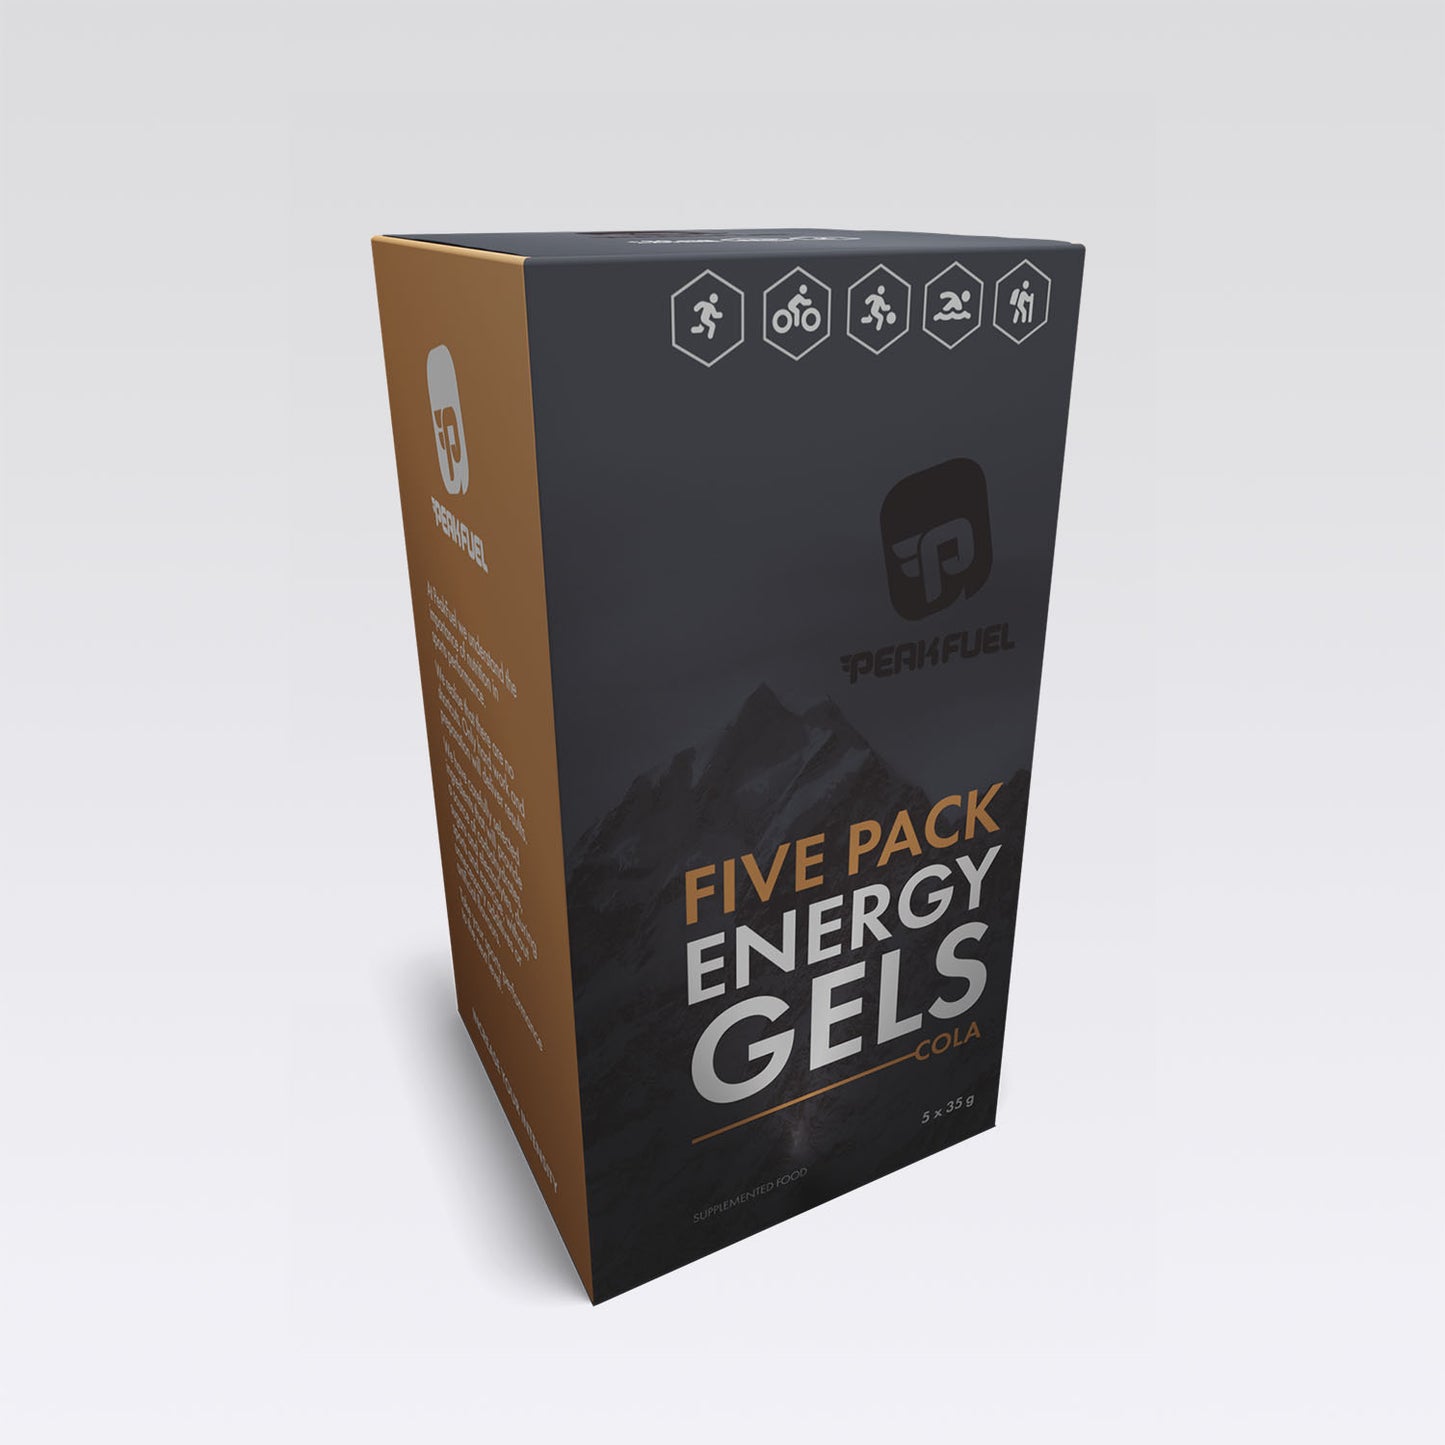 PEAKFUEL Cola 35g Energy Gels - Box of 5